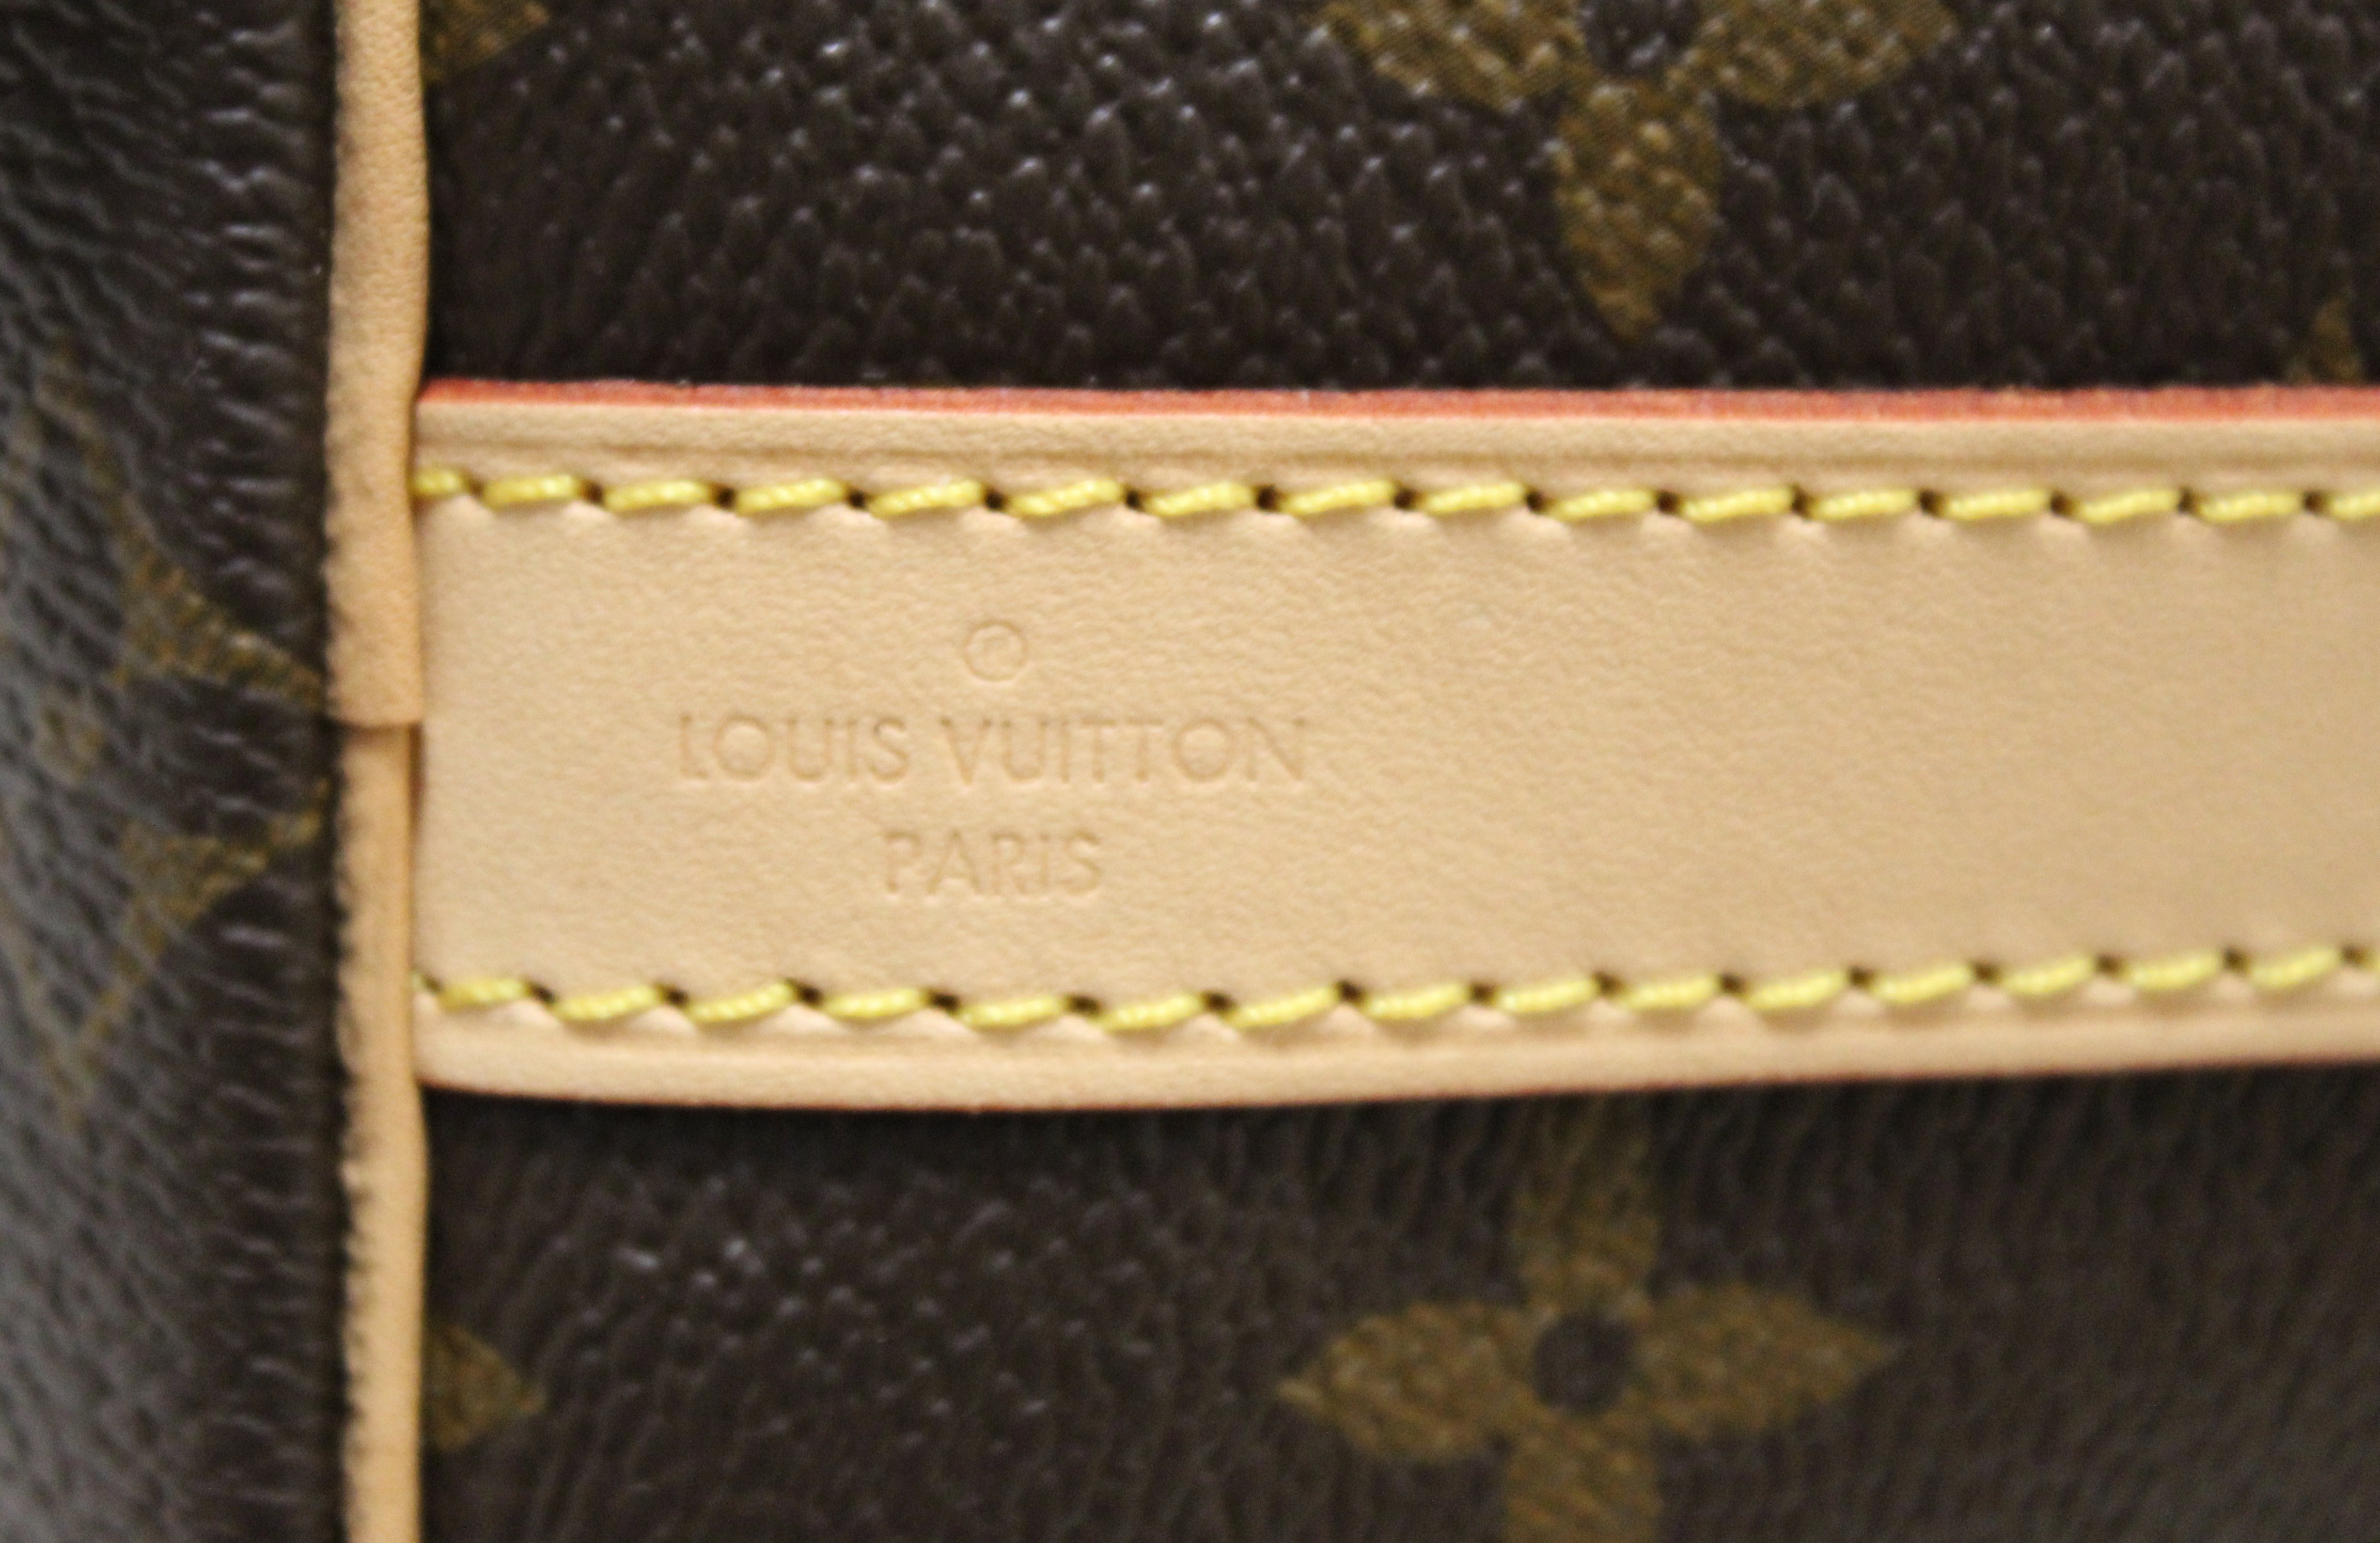 Authentic Louis Vuitton Classic Monogram Canvas Speedy 25 Bandouliere Bag